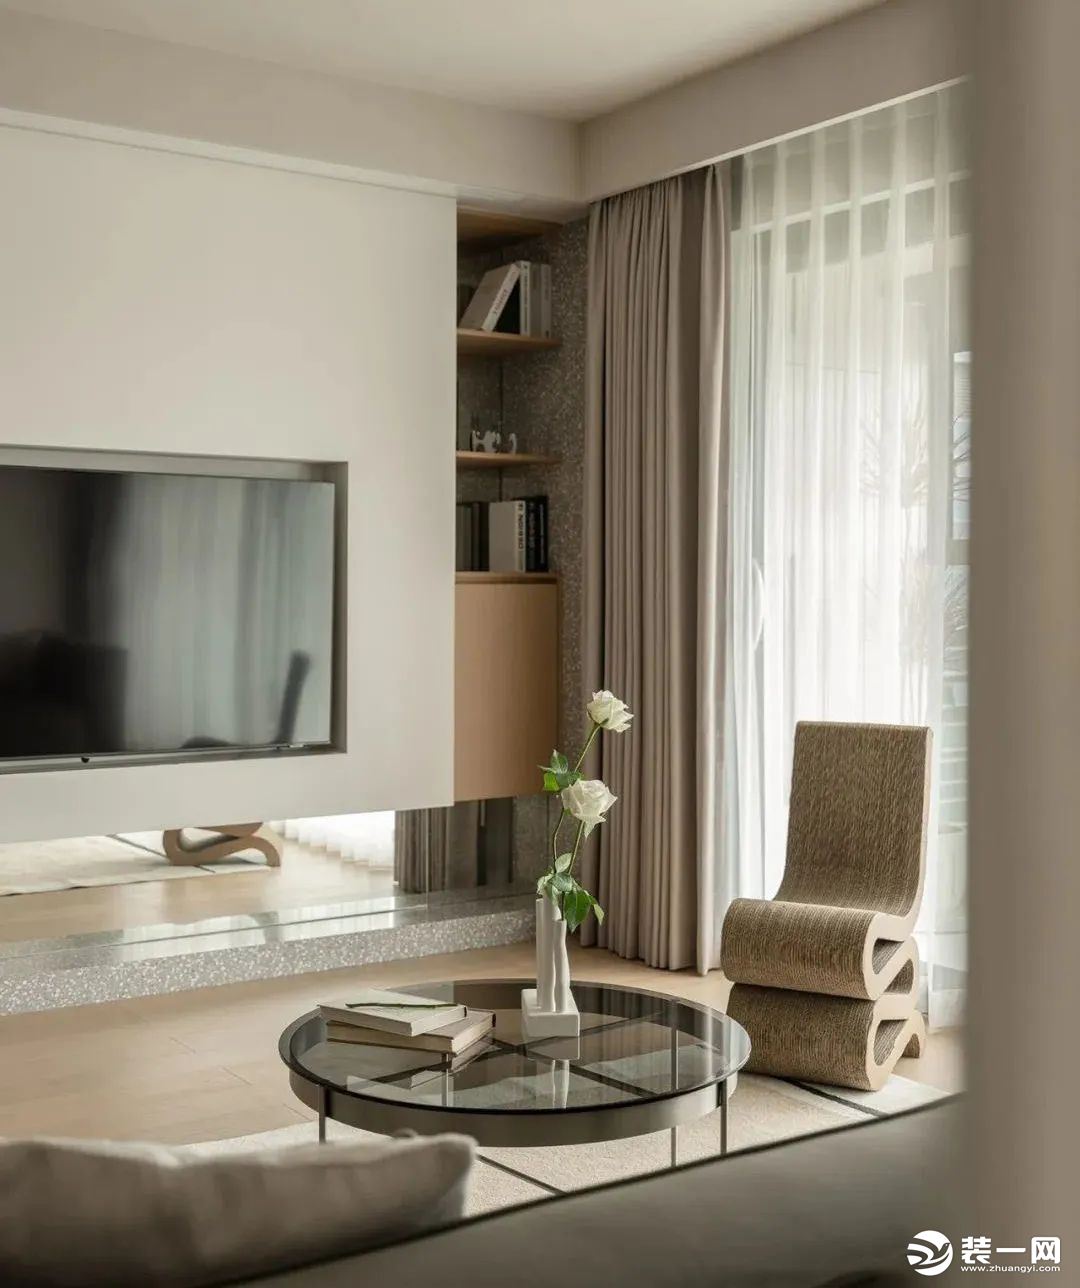 电视墙作为空间隔断，选择悬浮式设计，让客厅更有通透感与设计感，水磨石地台搭配镜面效果，一侧巧设开放储